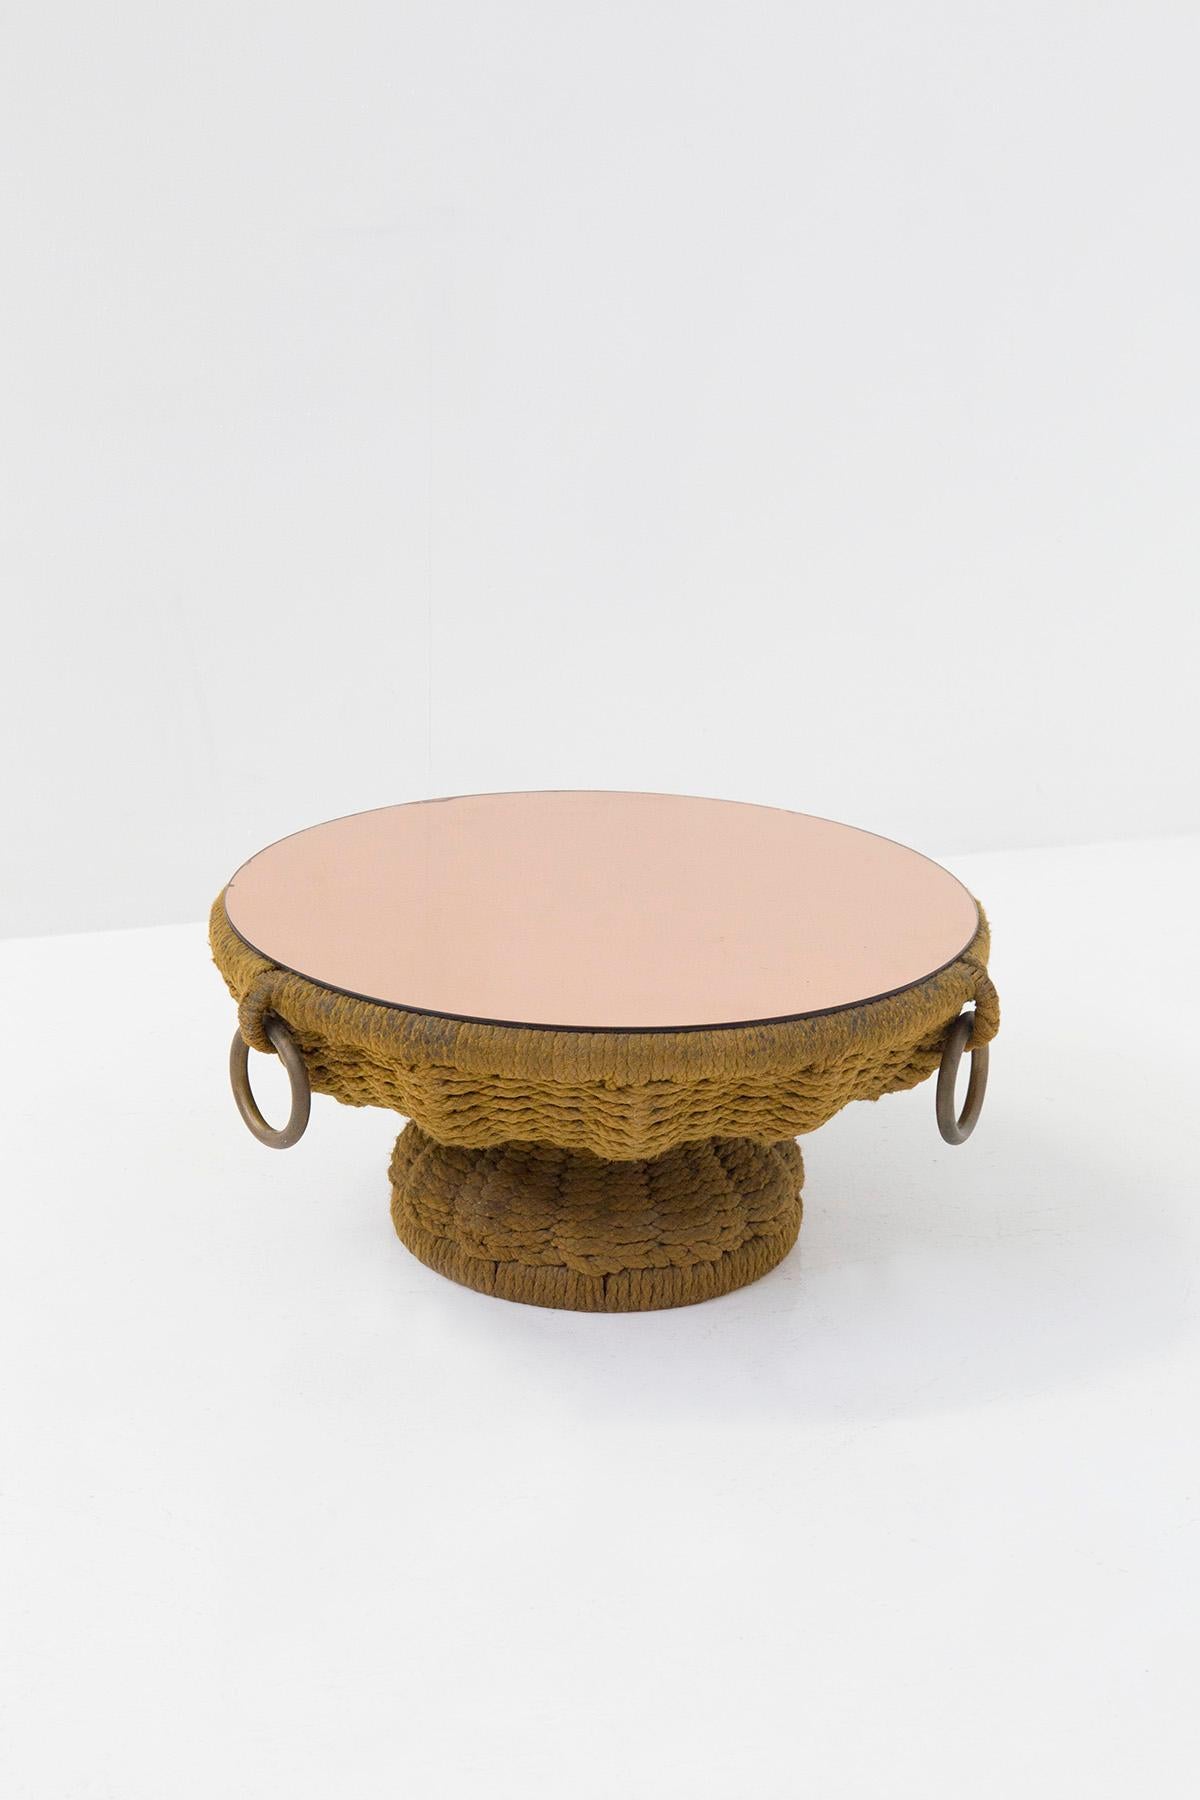 Magnifique table basse de Marzio Cecchi des années 1970. La table basse est un magnifique exemple du savoir-faire italien en matière de travail de la corde. En effet, la table basse présente une structure avec un tissage très dense réalisé avec de